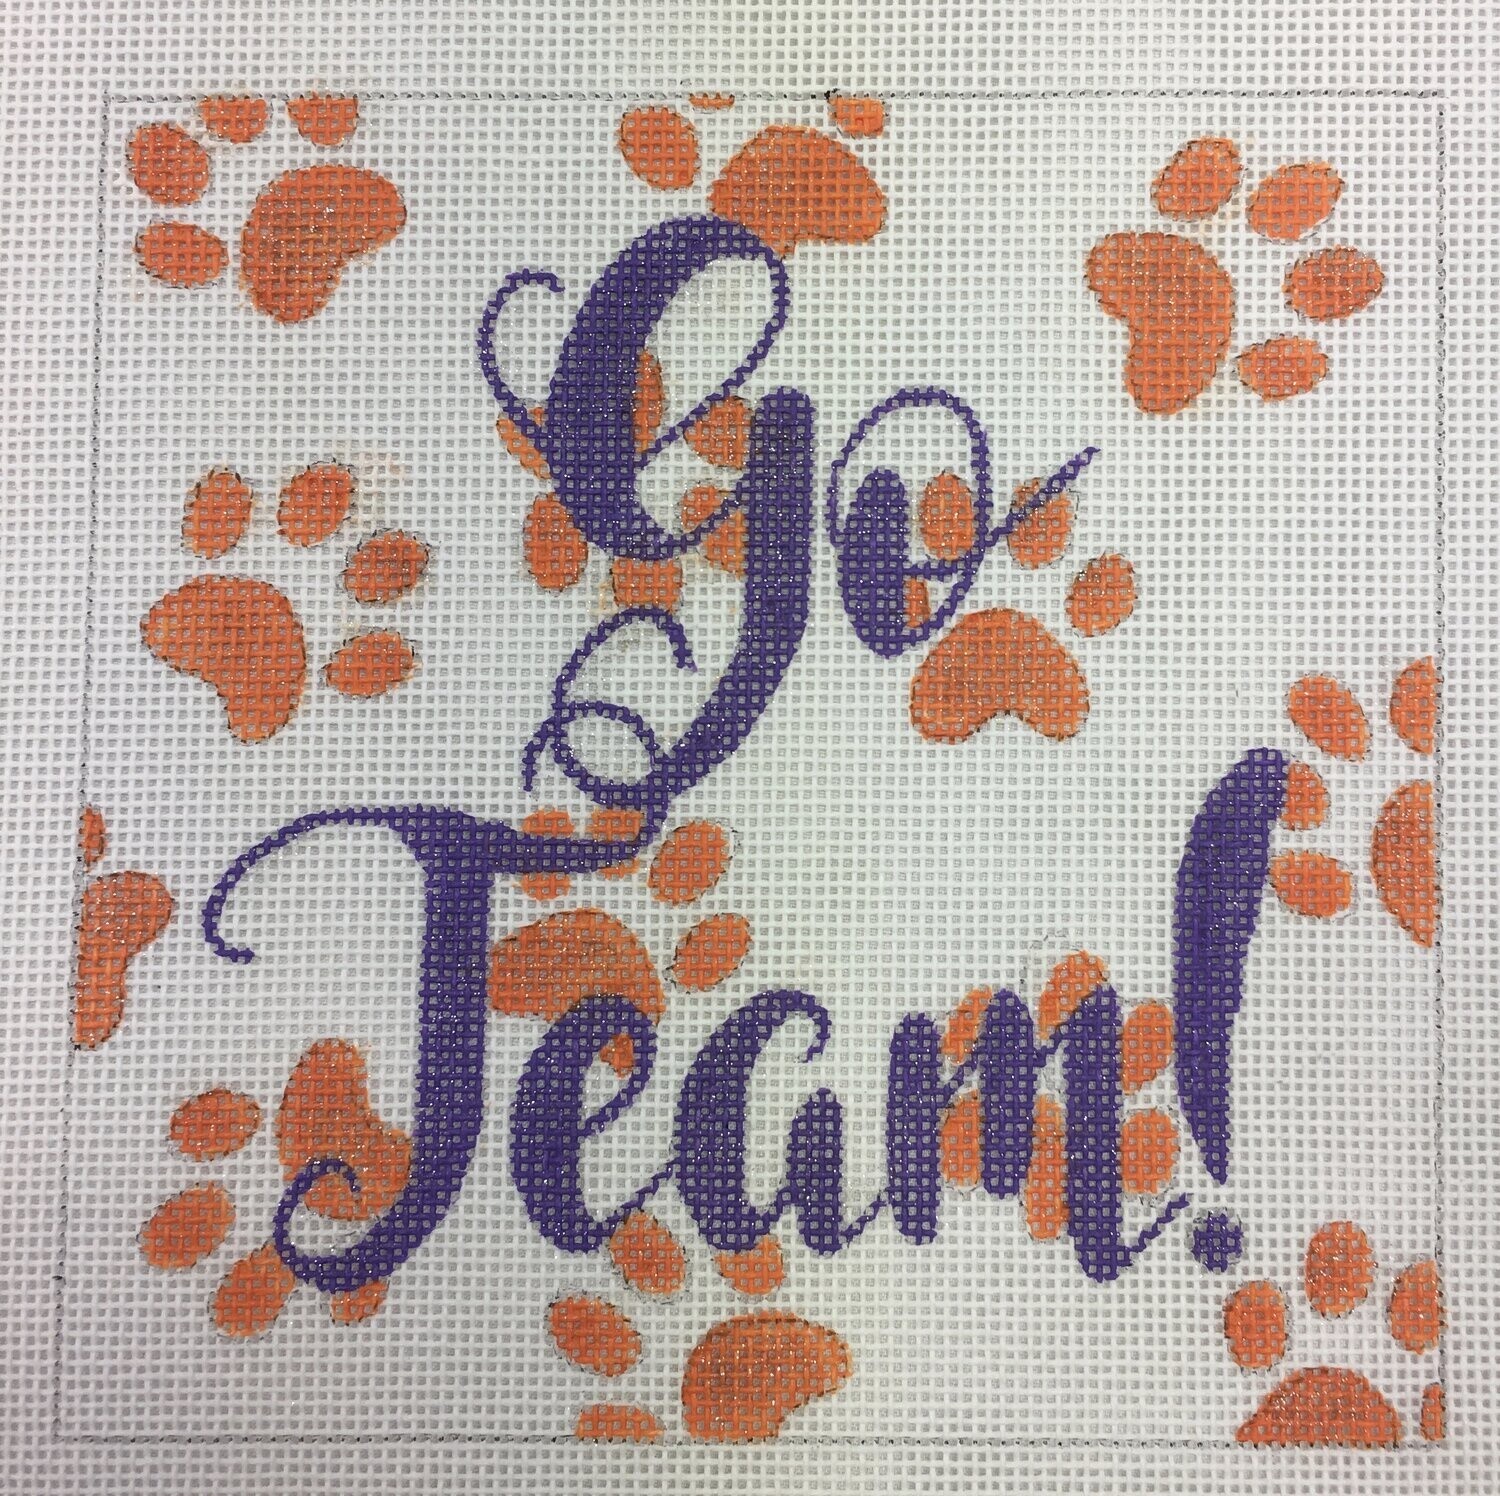 Go Team! - Clemson